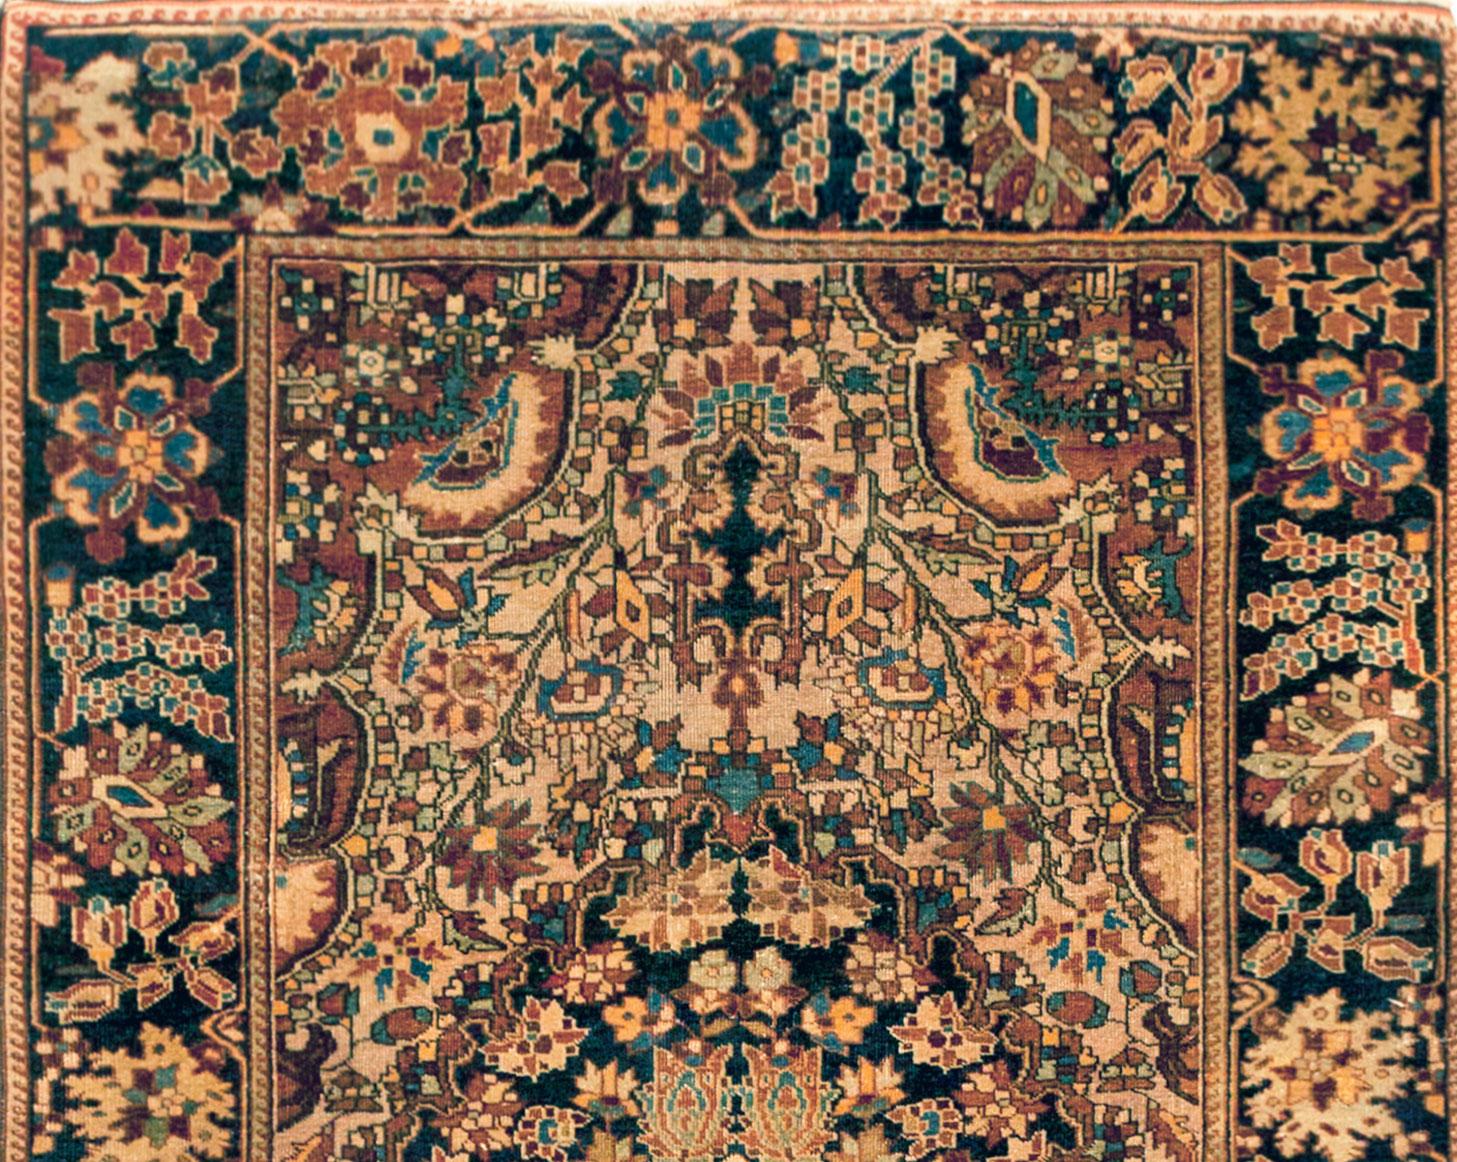 Antiker Ferahan Sarouk Orientteppich, um 1900, kleines Format

Ein antiker Ferahan Sarouk Orientteppich, Größe 4'9